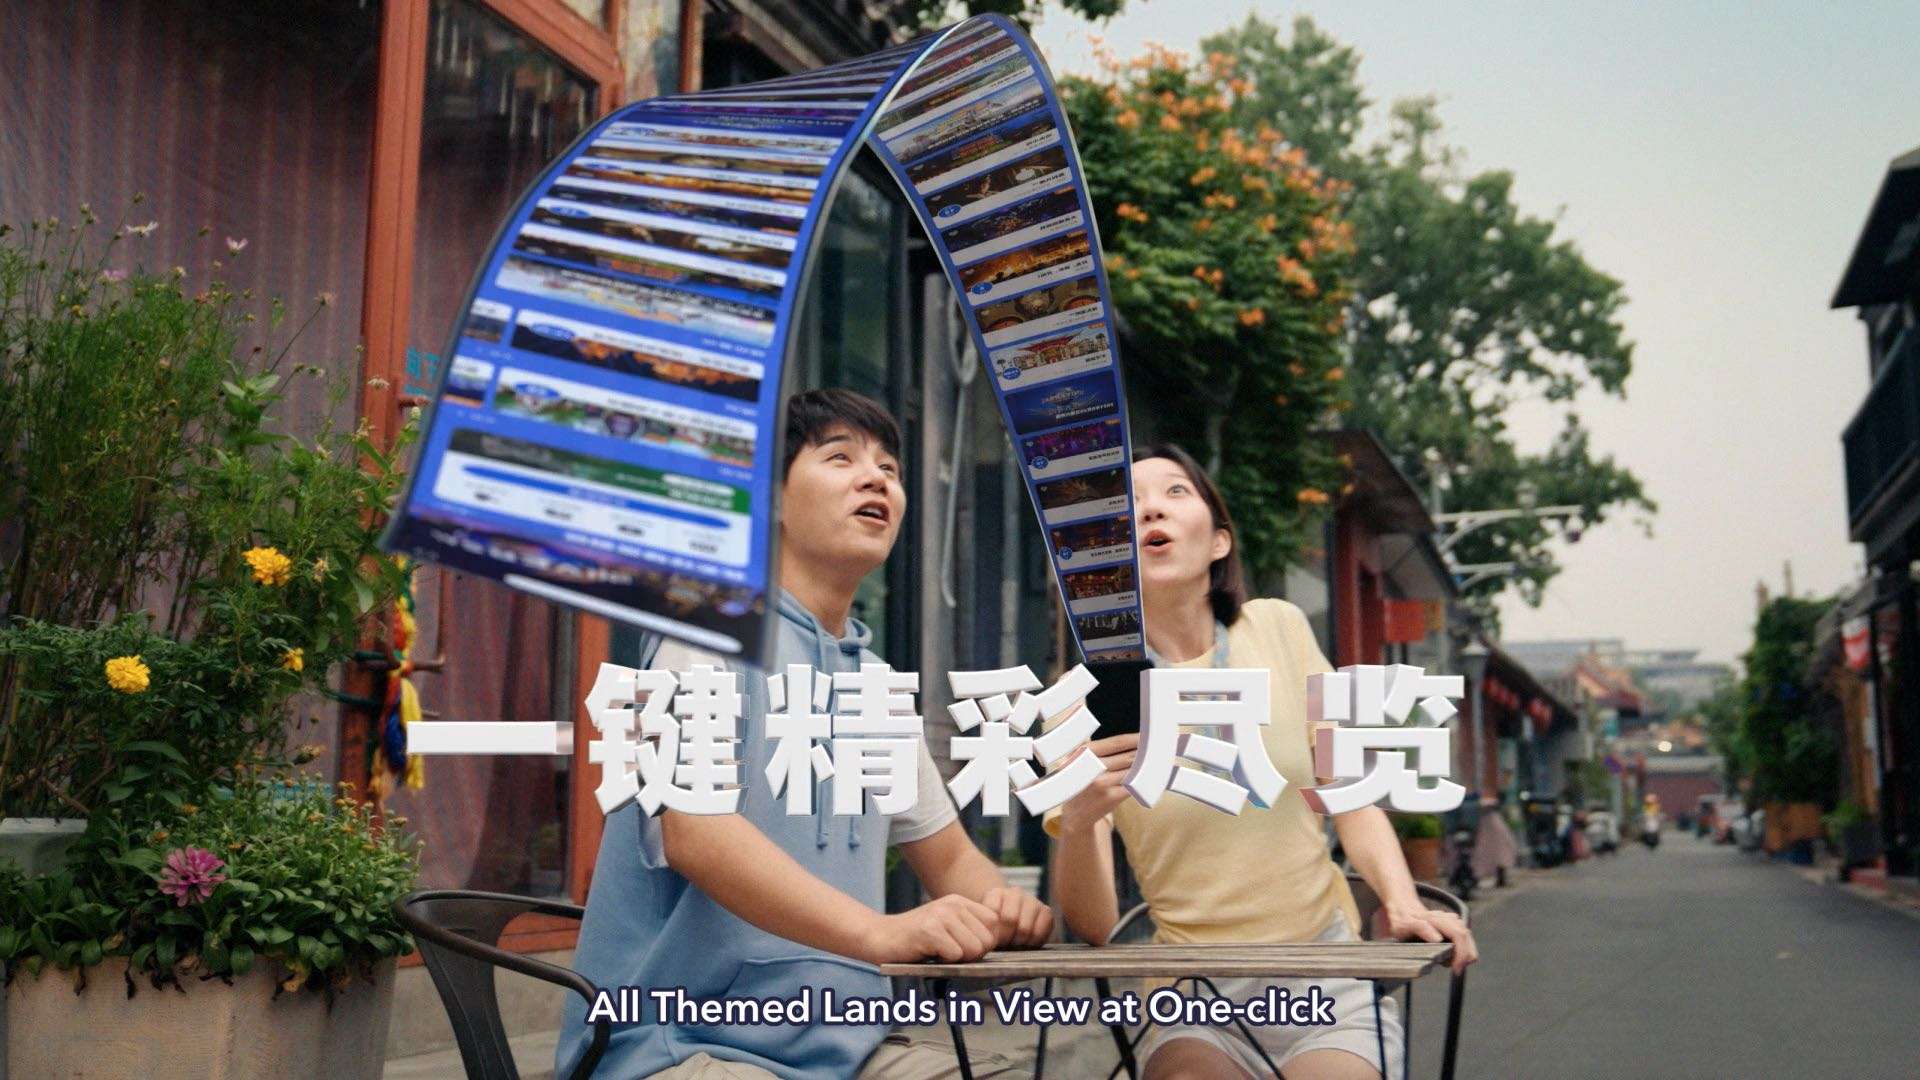 北京环球度假区APP | 官方宣传片